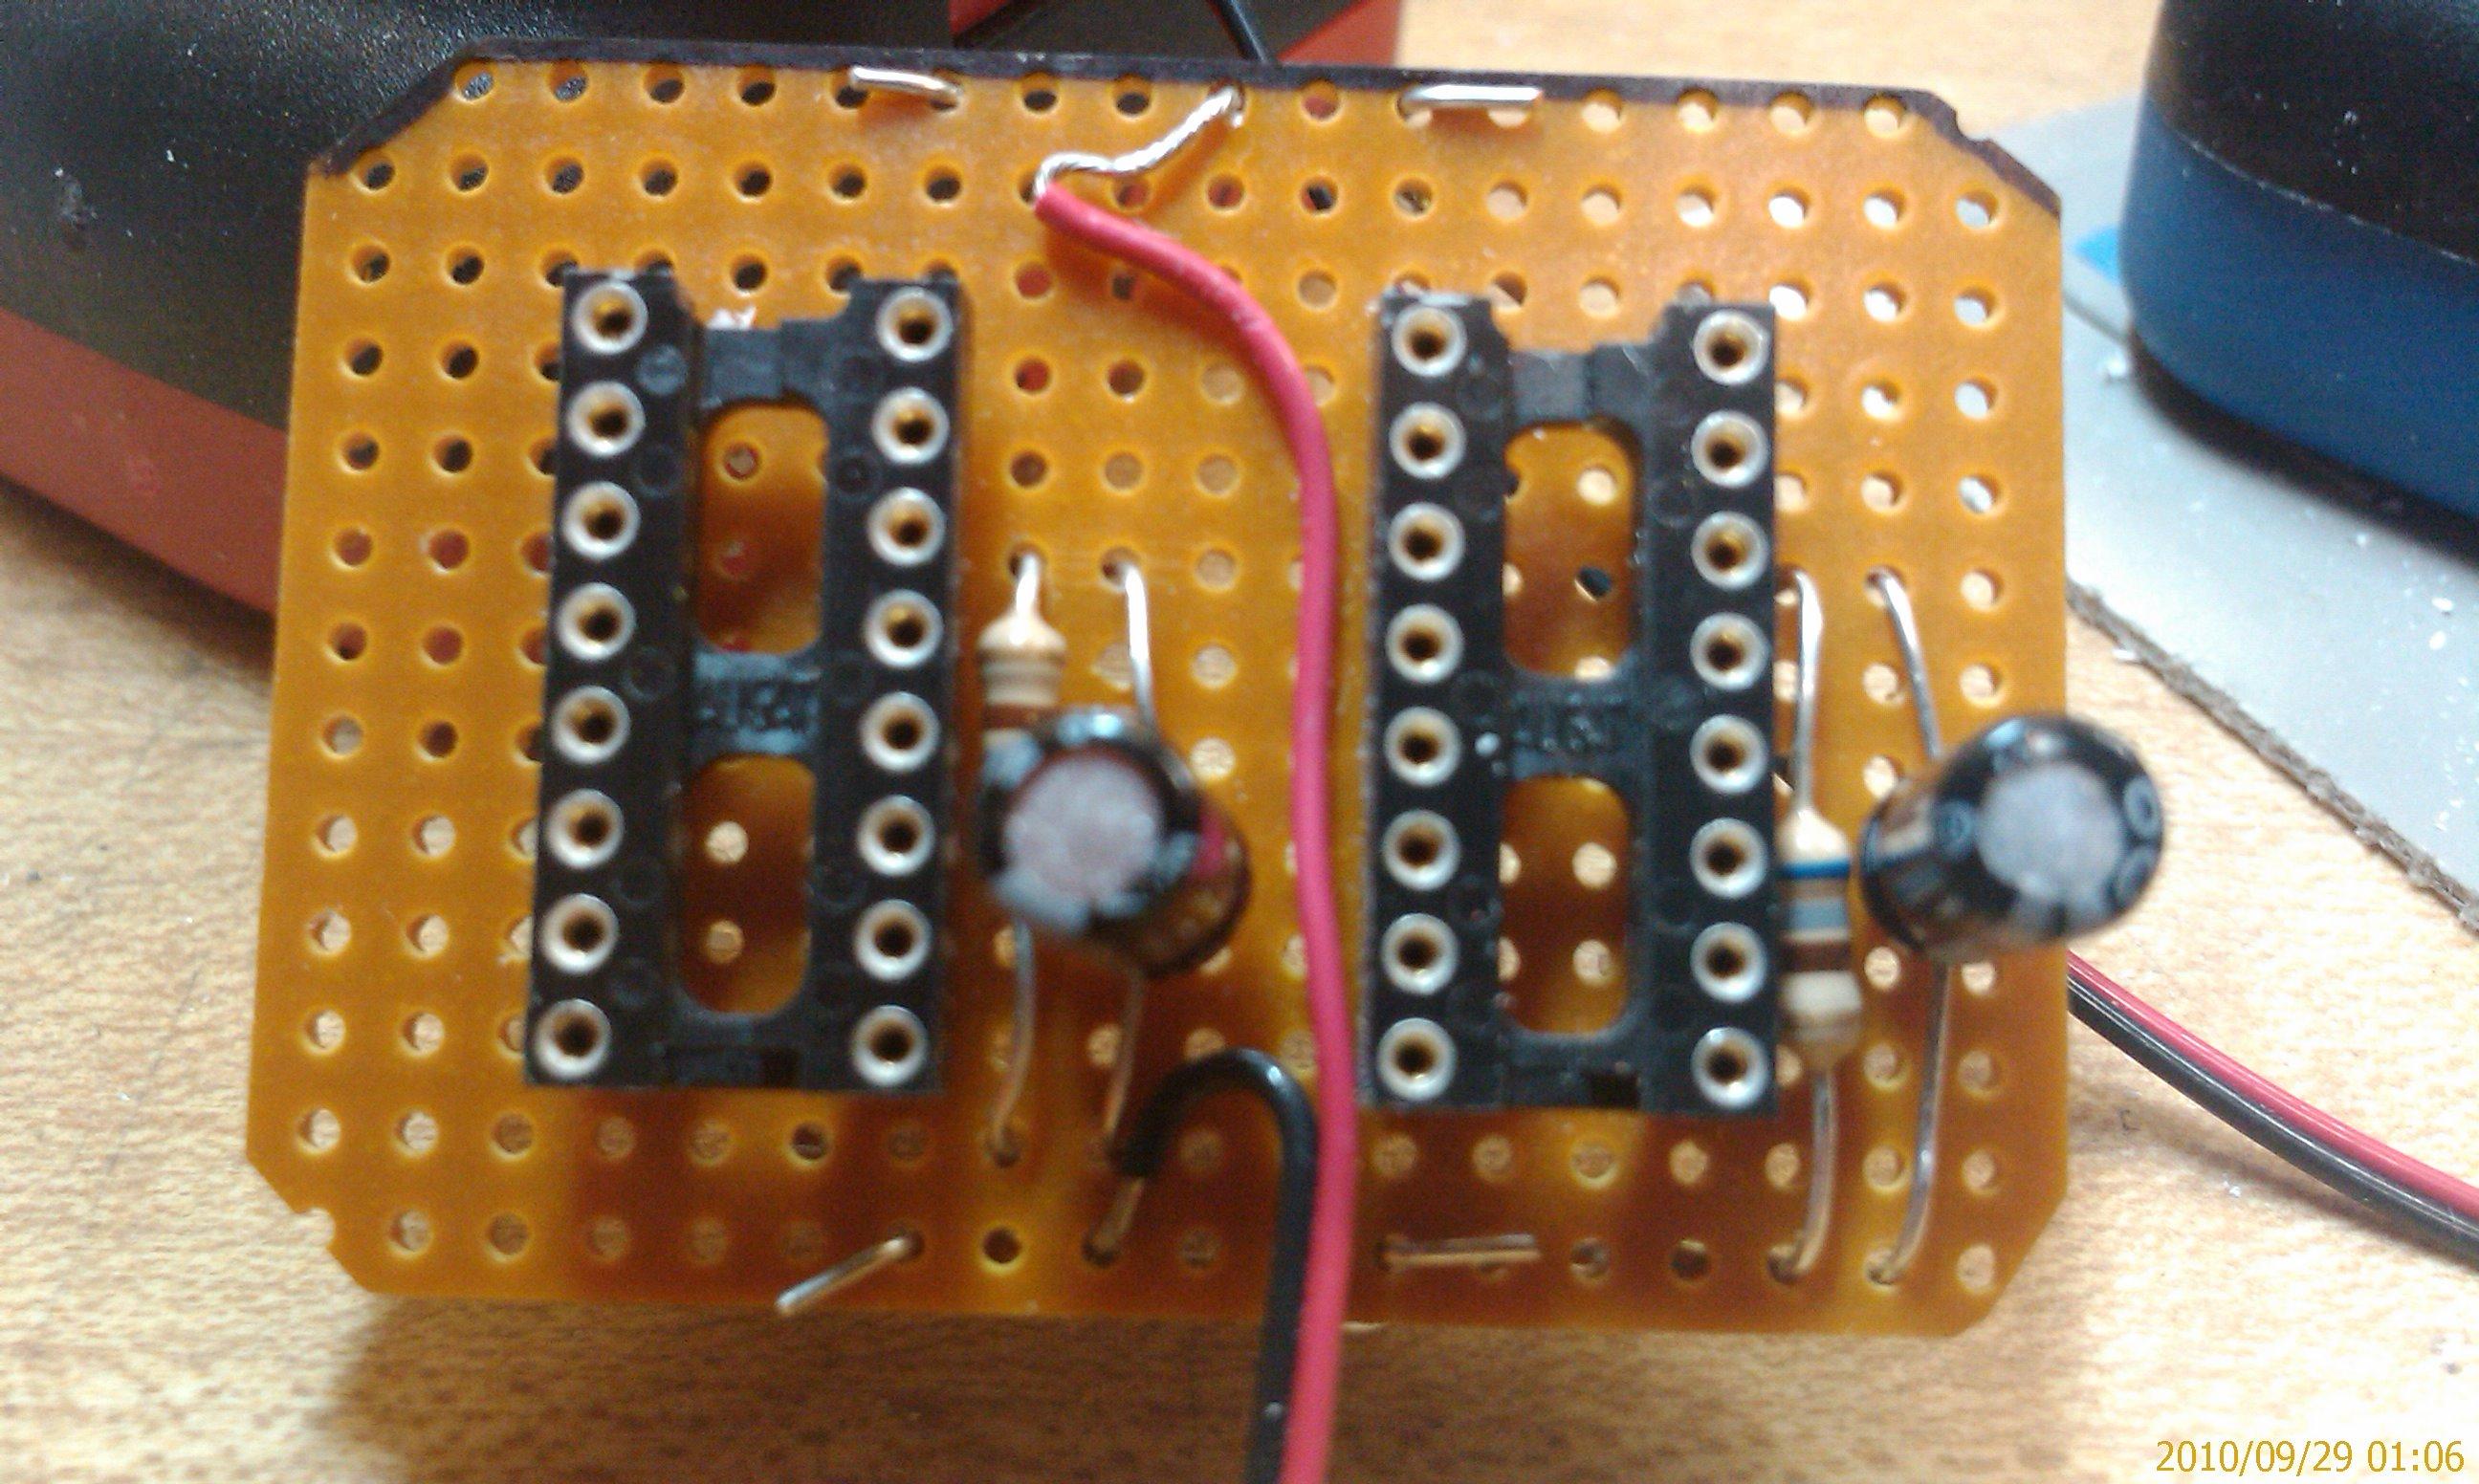 Warhound Titan damage control LED circuit board